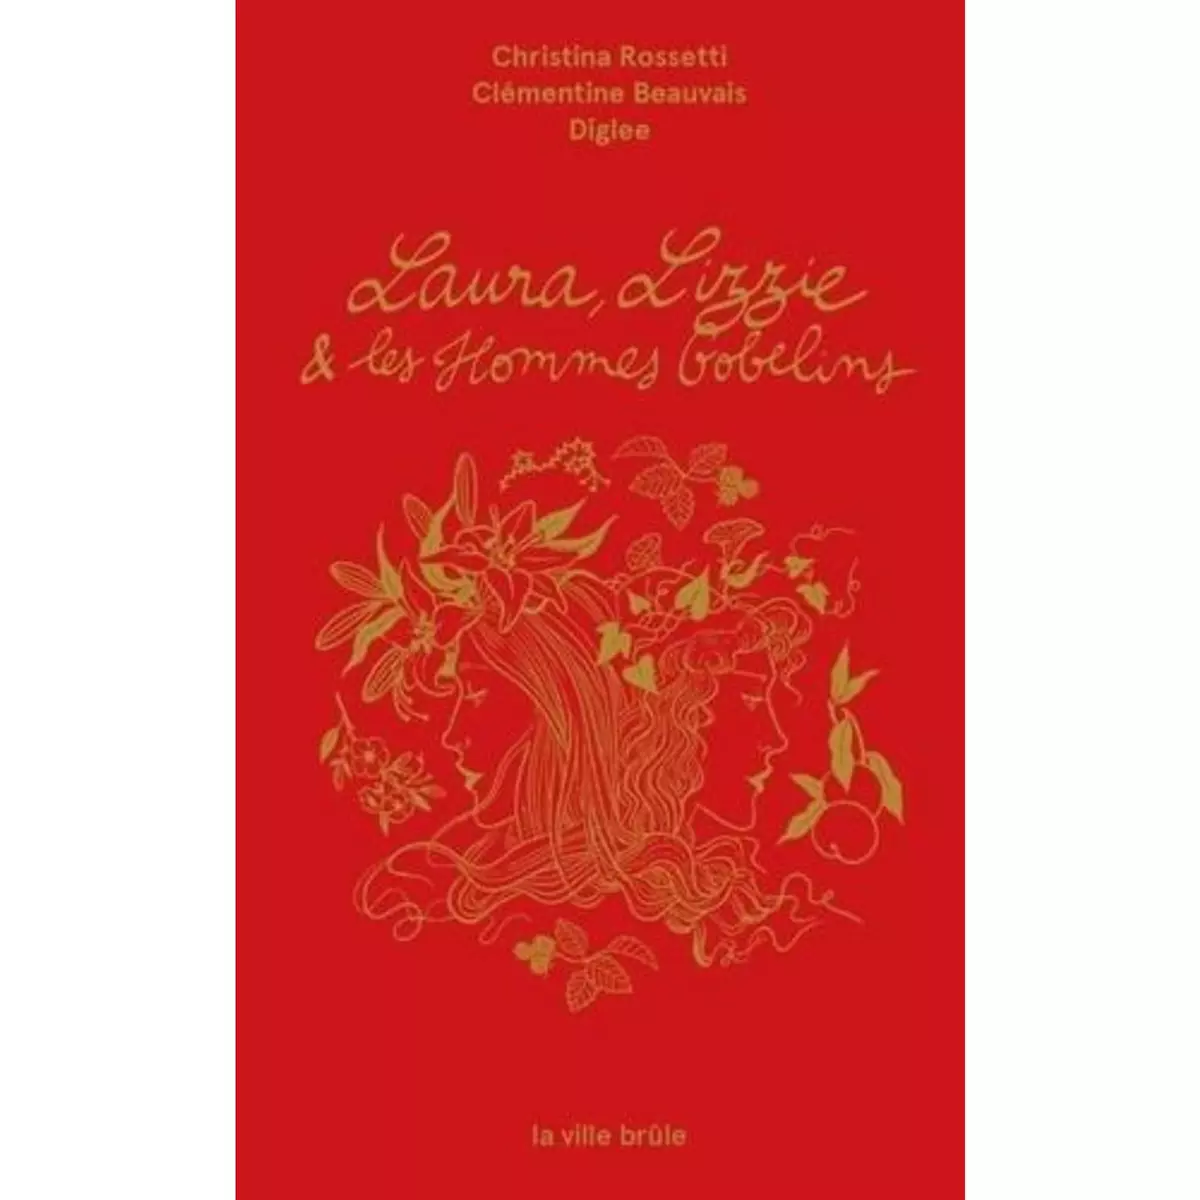  LAURA, LIZZIE ET LES HOMMES-GOBELINS. EDITION BILINGUE FRANCAIS-ANGLAIS, Rossetti Christina